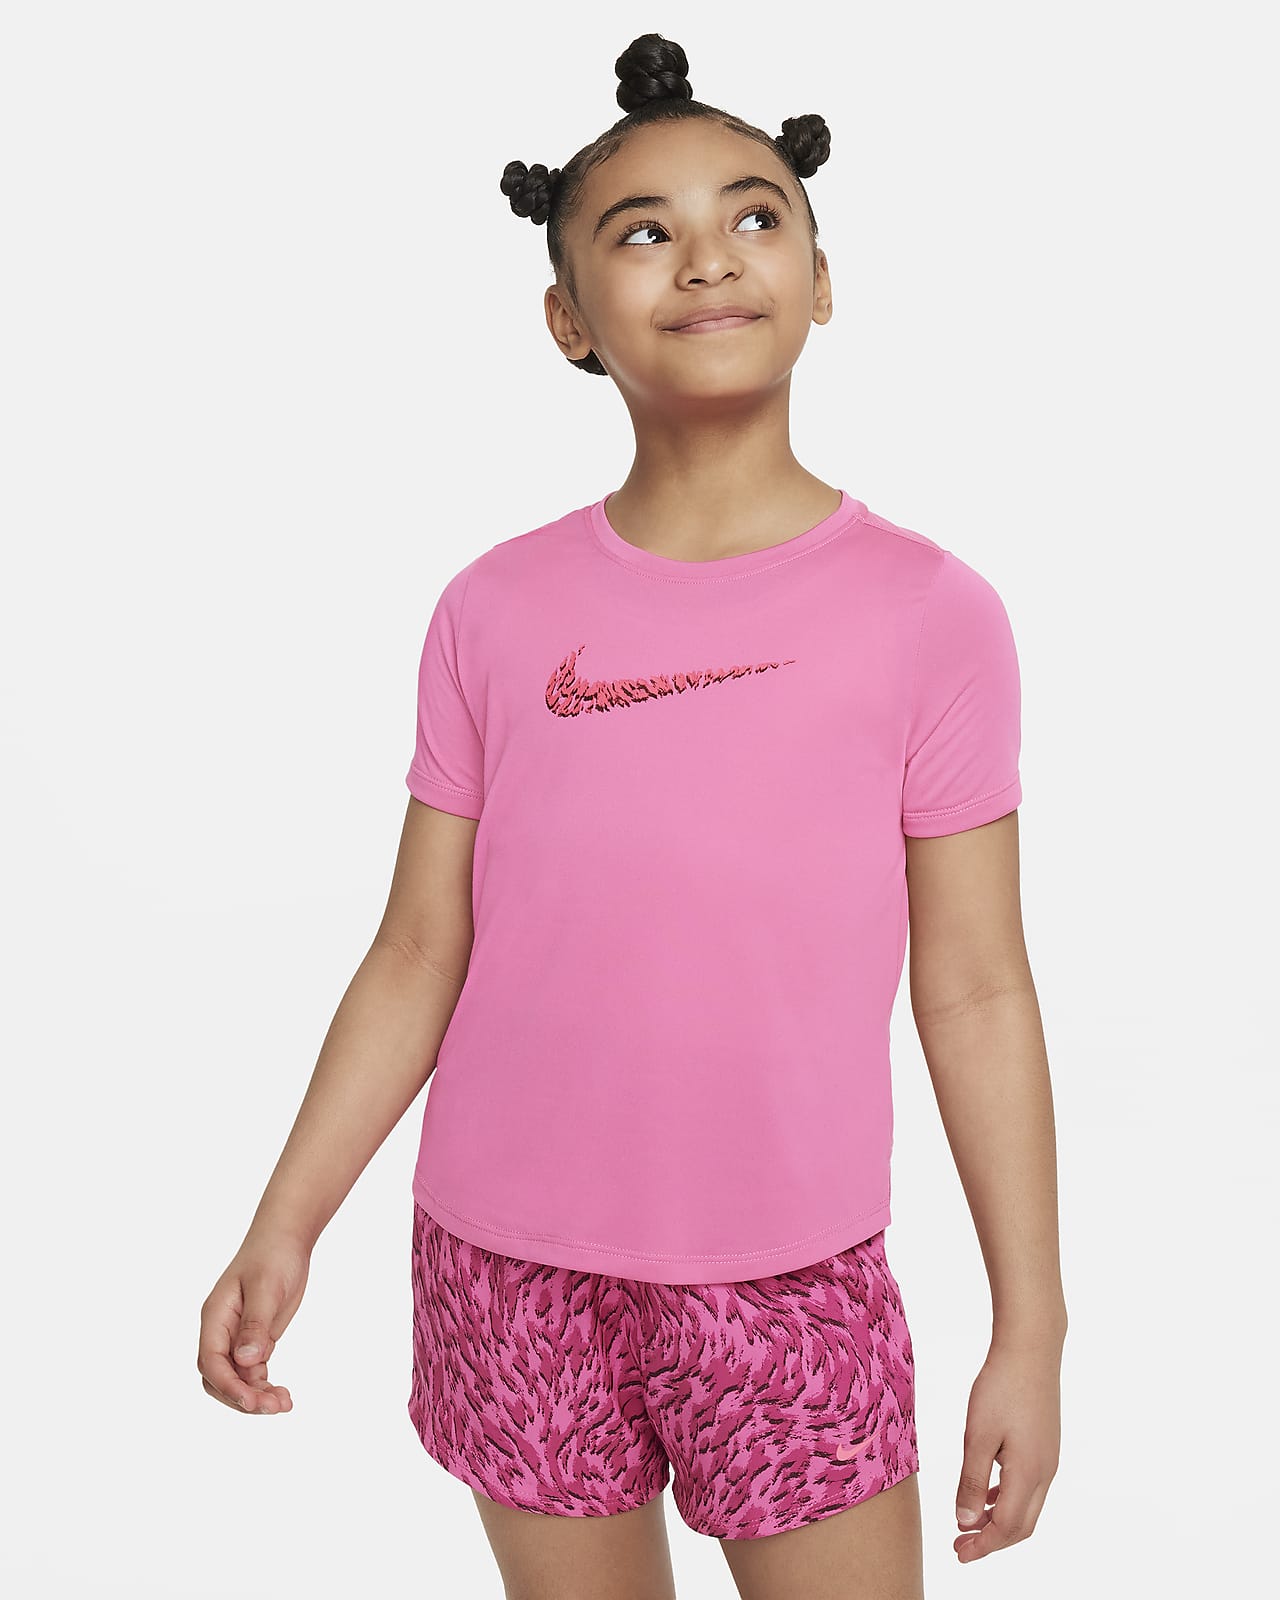 Κοντομάνικη μπλούζα προπόνησης Nike One για μεγάλα κορίτσια